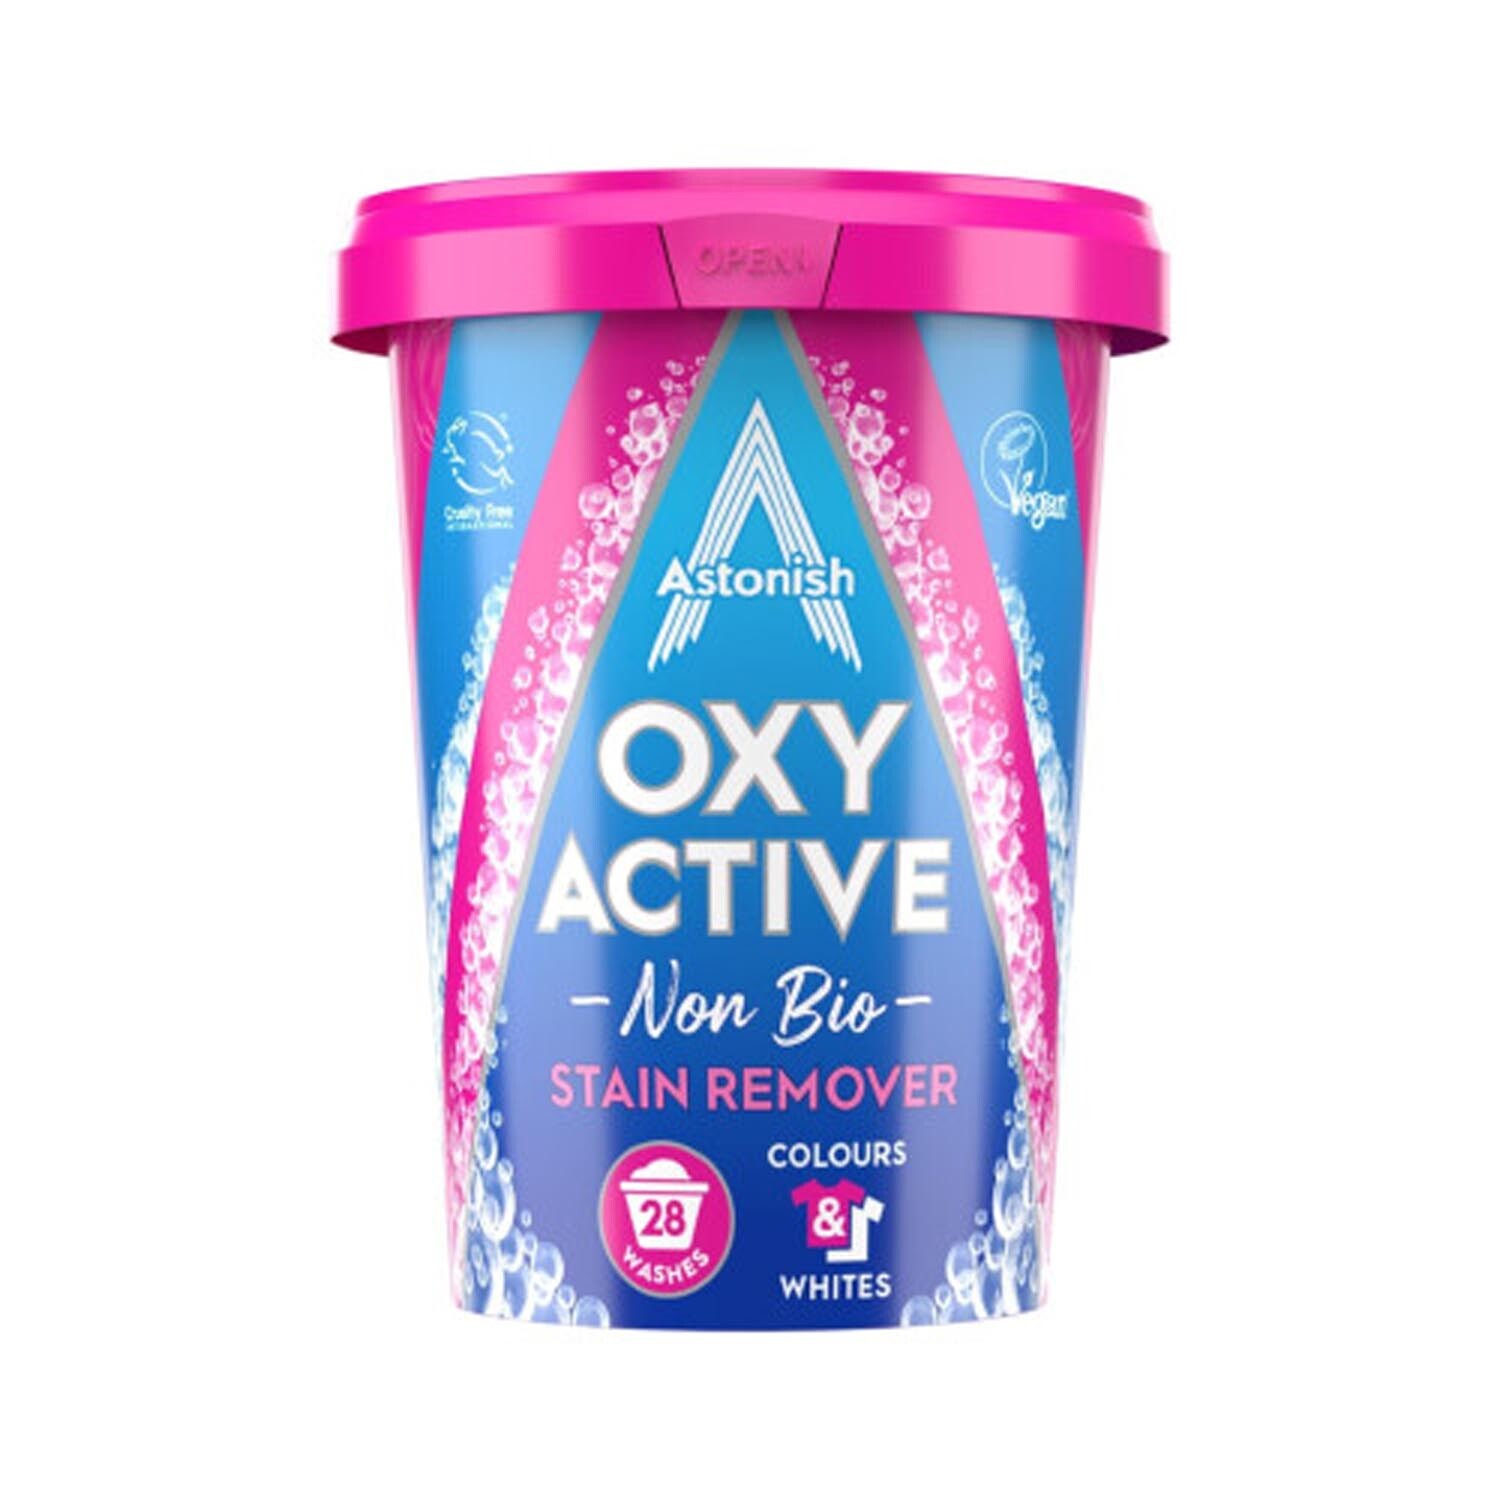 Oxy Active Non Bio Stain Remover - 28 Image